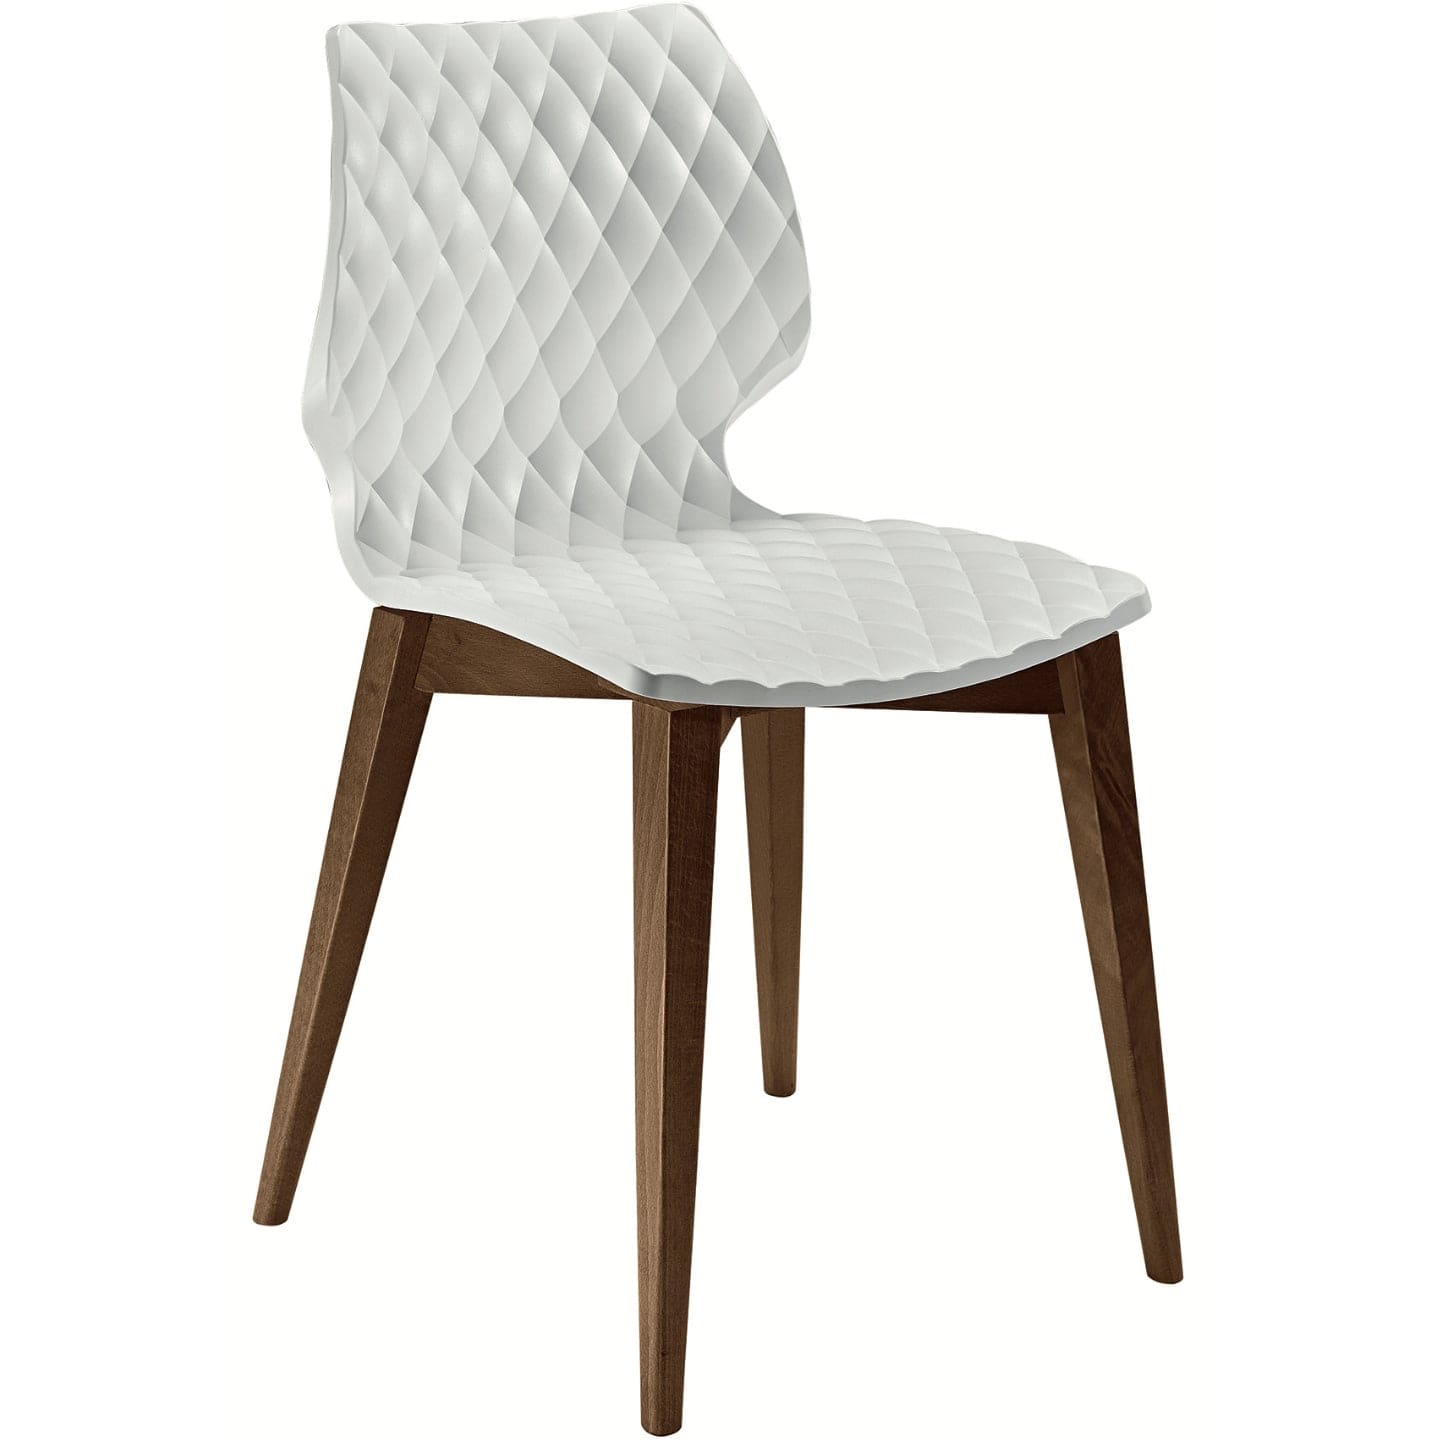 Soho Concept uni-562-chaise-de-salle-à-manger-assise-polypropylène-base-bois-naturel-industriel-en-blanc